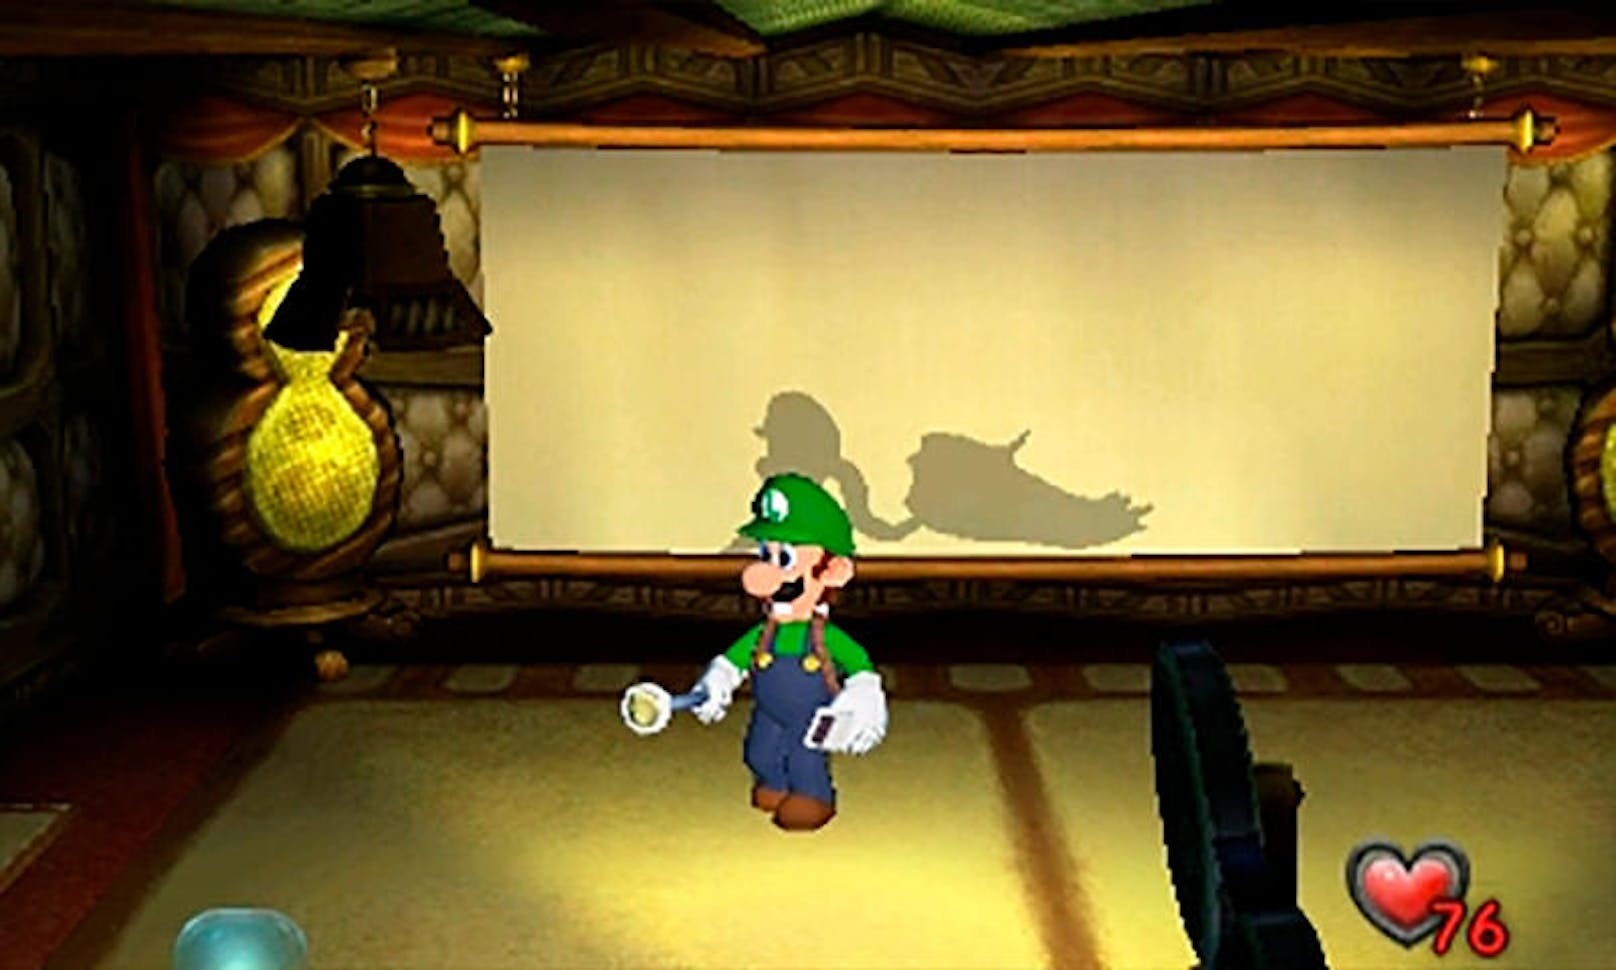 Für die Portierung hat Nintendo die Optik ordentlich aufpoliert und den Figuren neue Charaktermodelle verpasst. In Kombination mit der unheimlichen Musik kommt eine schöne Gruselstimmung auf Kinder-Geisterbahn-Niveau auf.